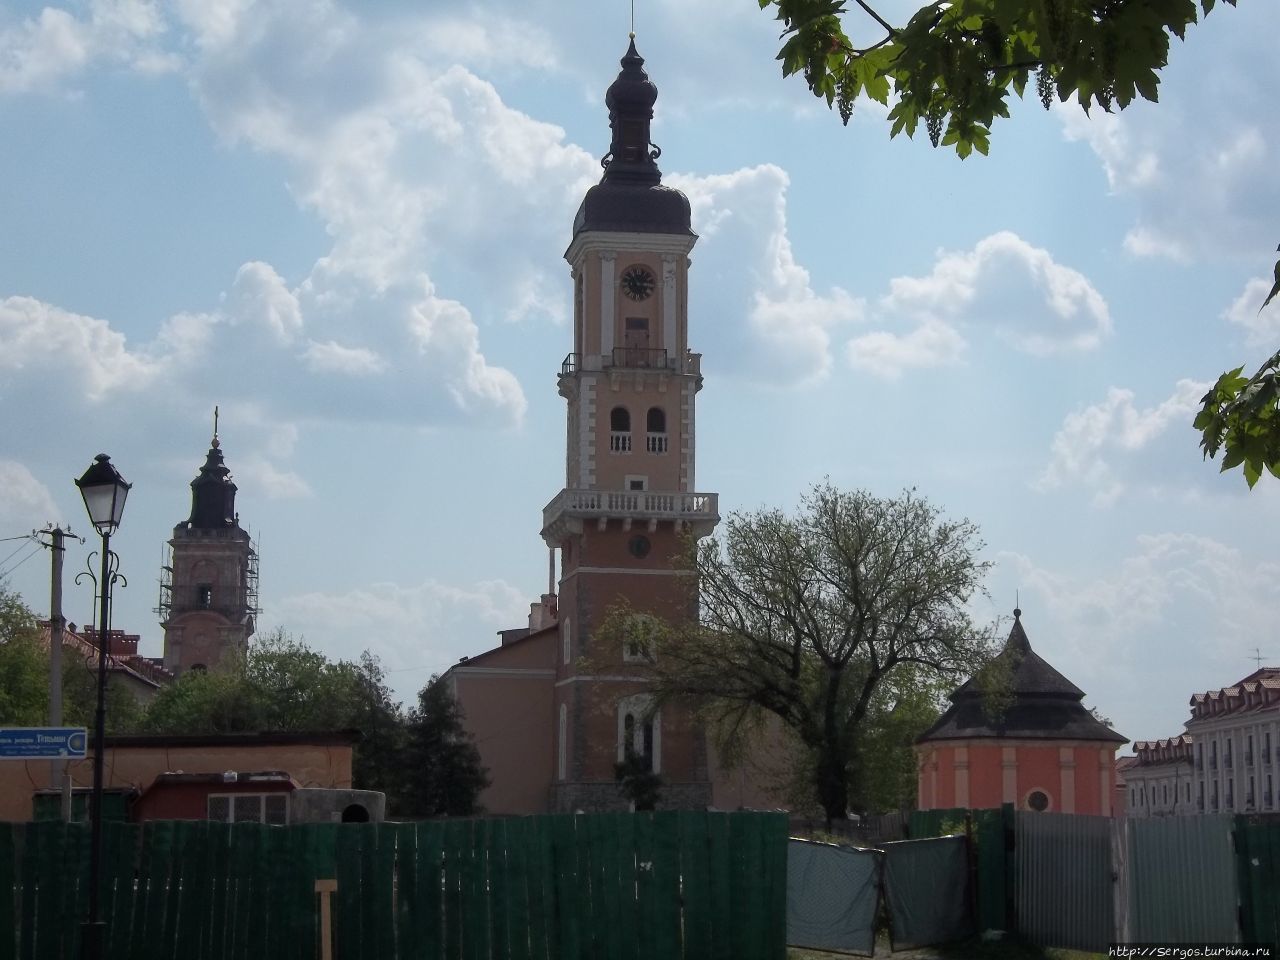 Ратуша (XIV-XVIIIвв.) и Армянский колодец (1638г.) Каменец-Подольский, Украина